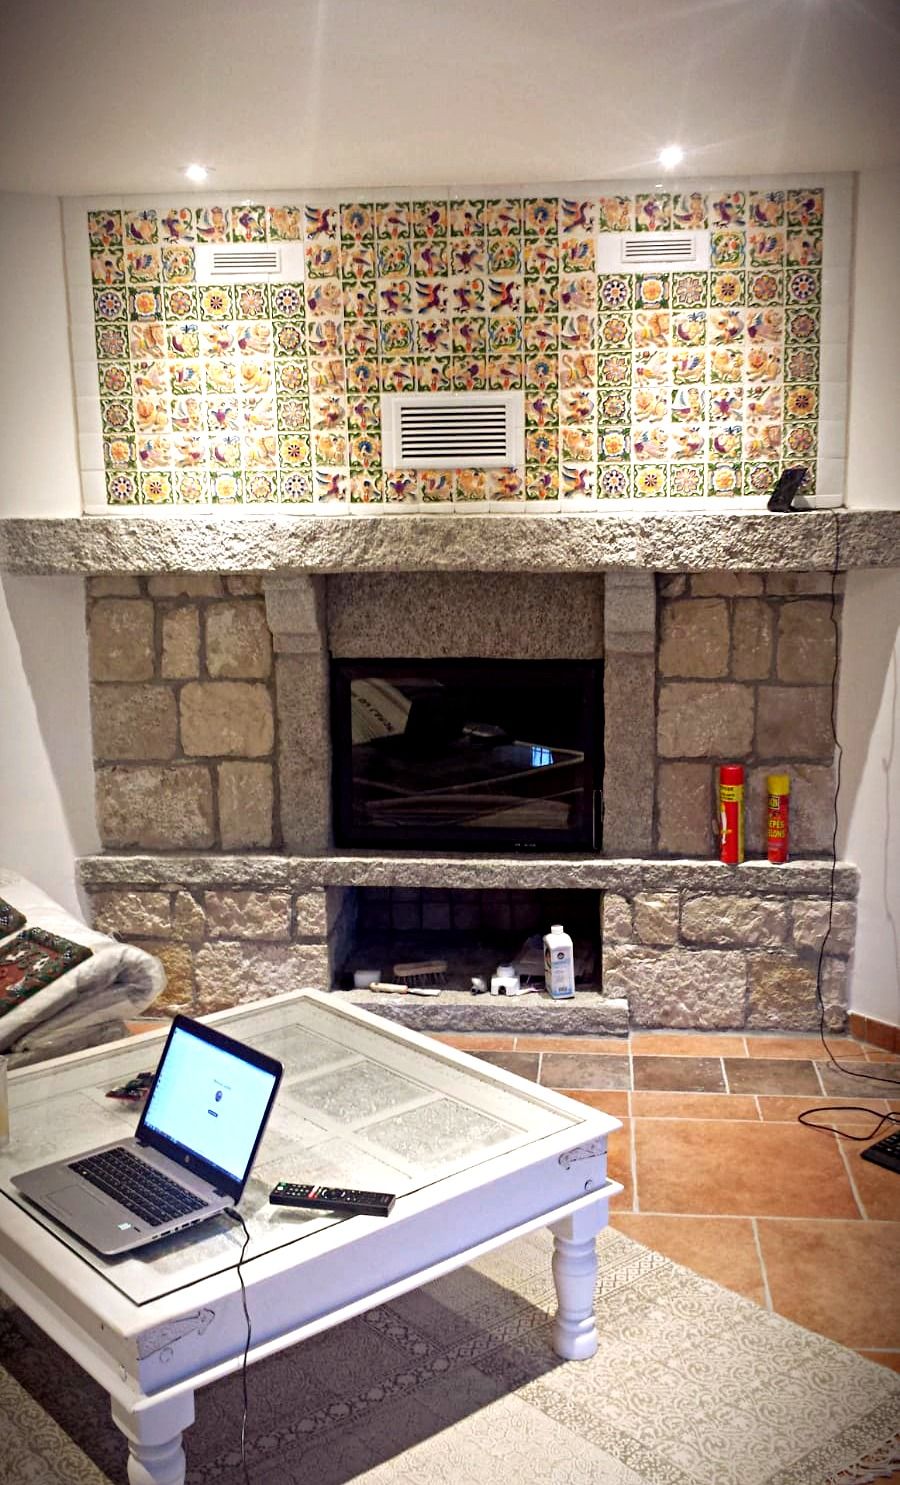 Fireplace Ceramic Tile Beautiful ÐÐ¸Ð½ Ð¾Ñ Ð¿Ð¾Ð ÑÐ·Ð¾Ð²Ð°ÑÐµÐ Ñ ÐÐ Ð°Ð´Ð¸Ð¼Ð¸Ñ Ð½Ð° Ð´Ð¾ÑÐºÐµ Designer Tiles From My